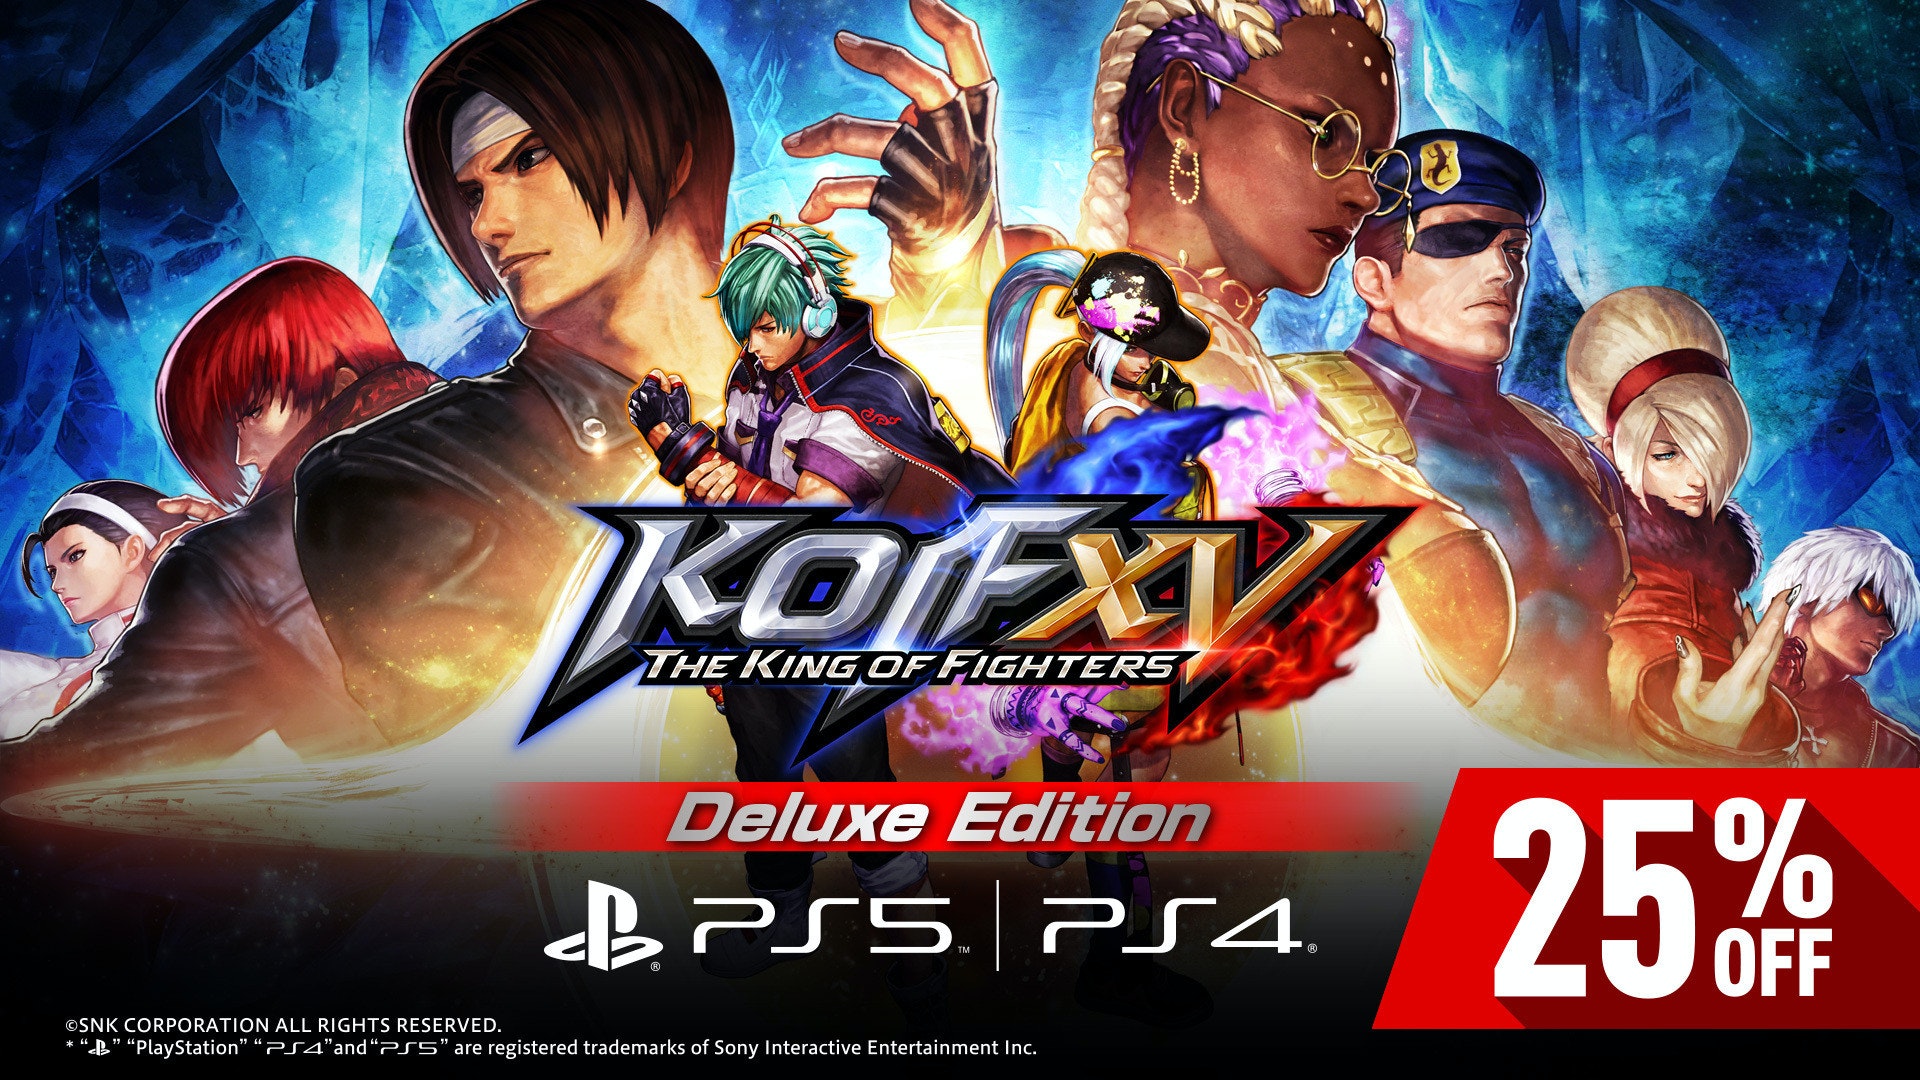 照片中提到了KOF、THE KINGOF FIGHTERS、Deluxe Edition，跟PlayStation VR、基克斯有關，包含了拳皇2022、拳皇十五、東京電玩展 2021 在線、國王、特里·博加德